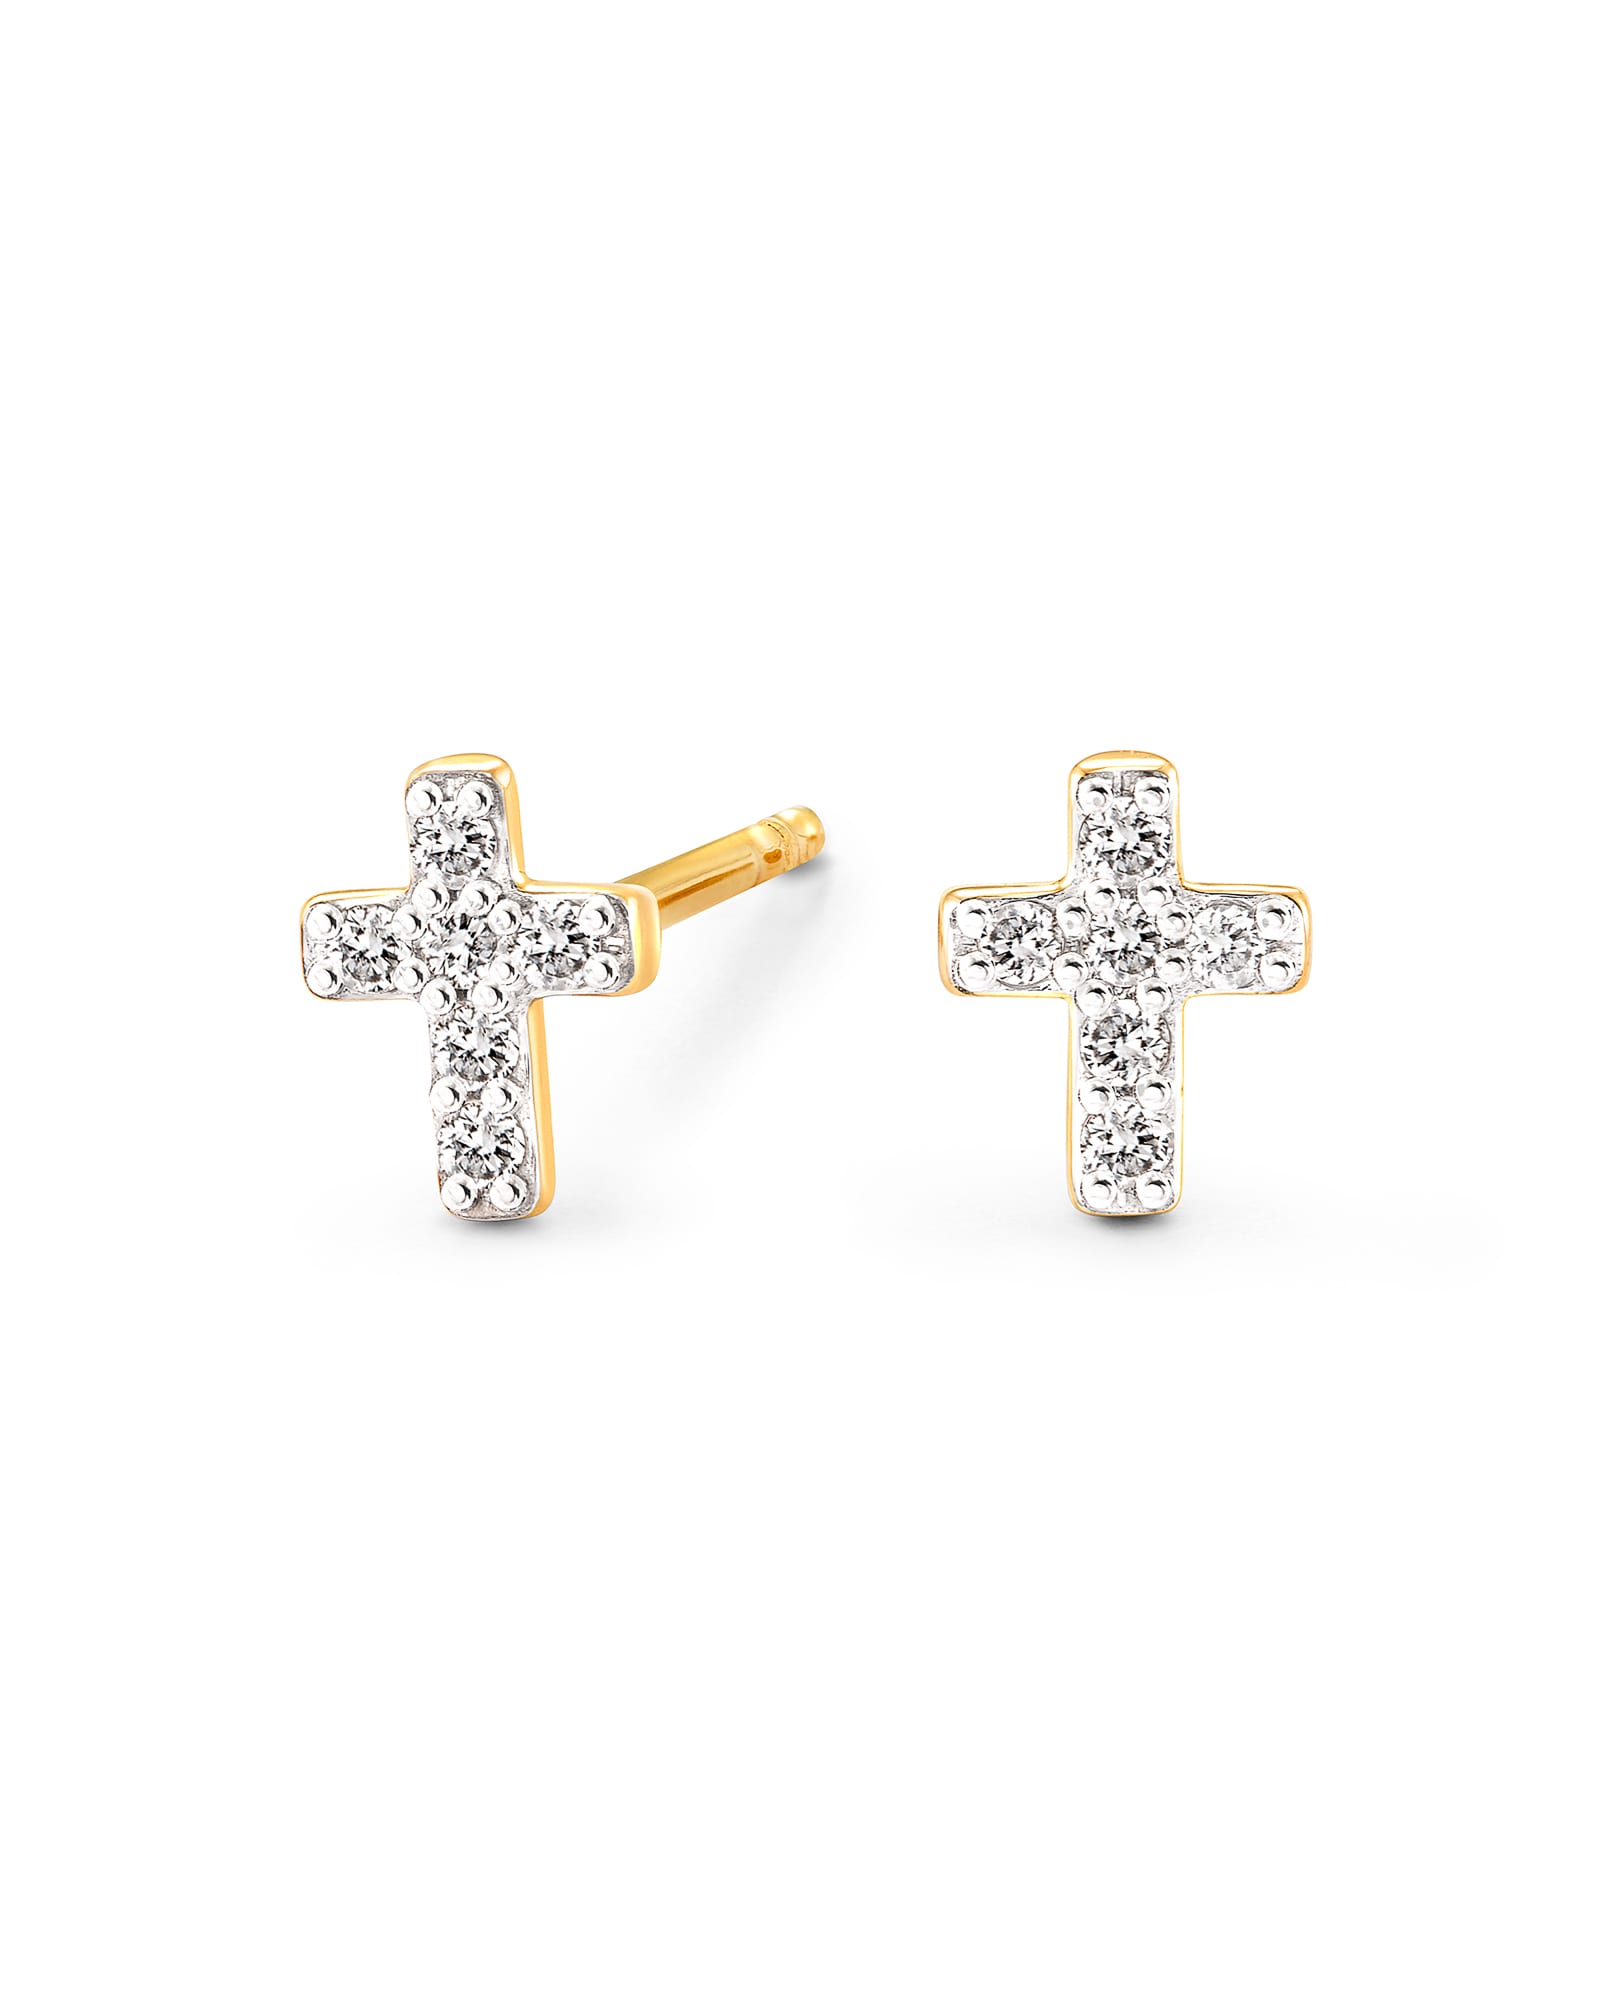 110 CT TW Diamond Cross Stud Earrings in 10K White Gold  Zales Outlet